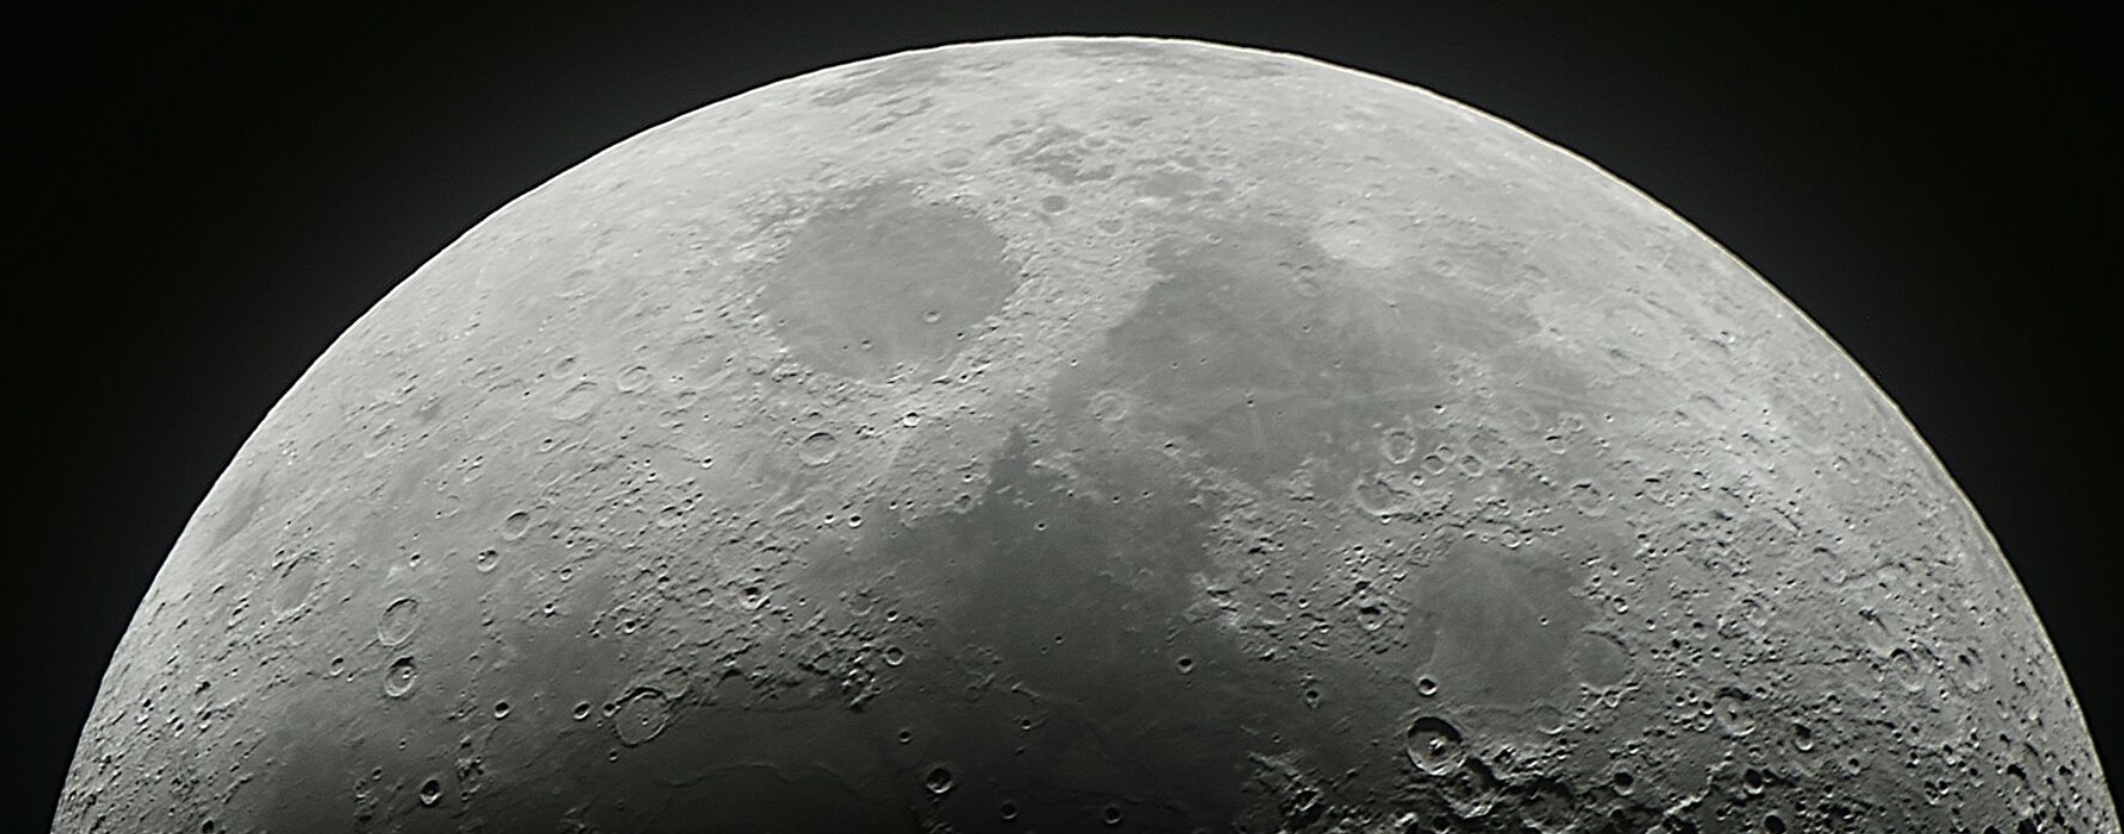 Луна 24 25. Луна 25. Луна 25 разбилась. Фото Луны с разбившегося русского спутника.